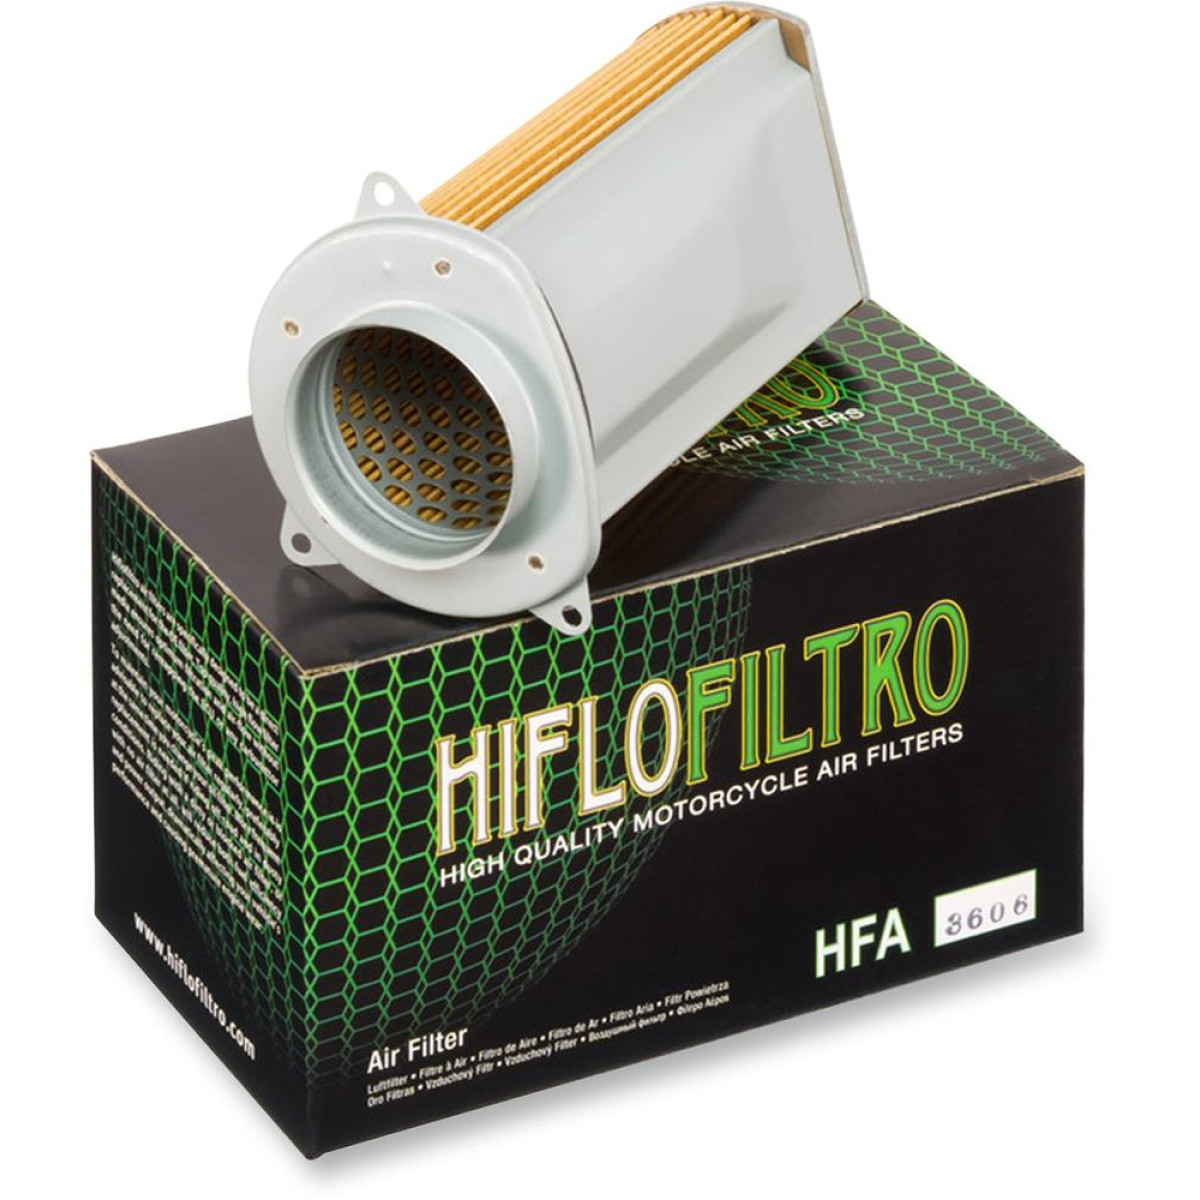 FILTRO AIRE HIFLOFILTRO HFA3606 SUZUKI S50 05/09 / VS600 86/98 / SUZUKI VS800 92/09